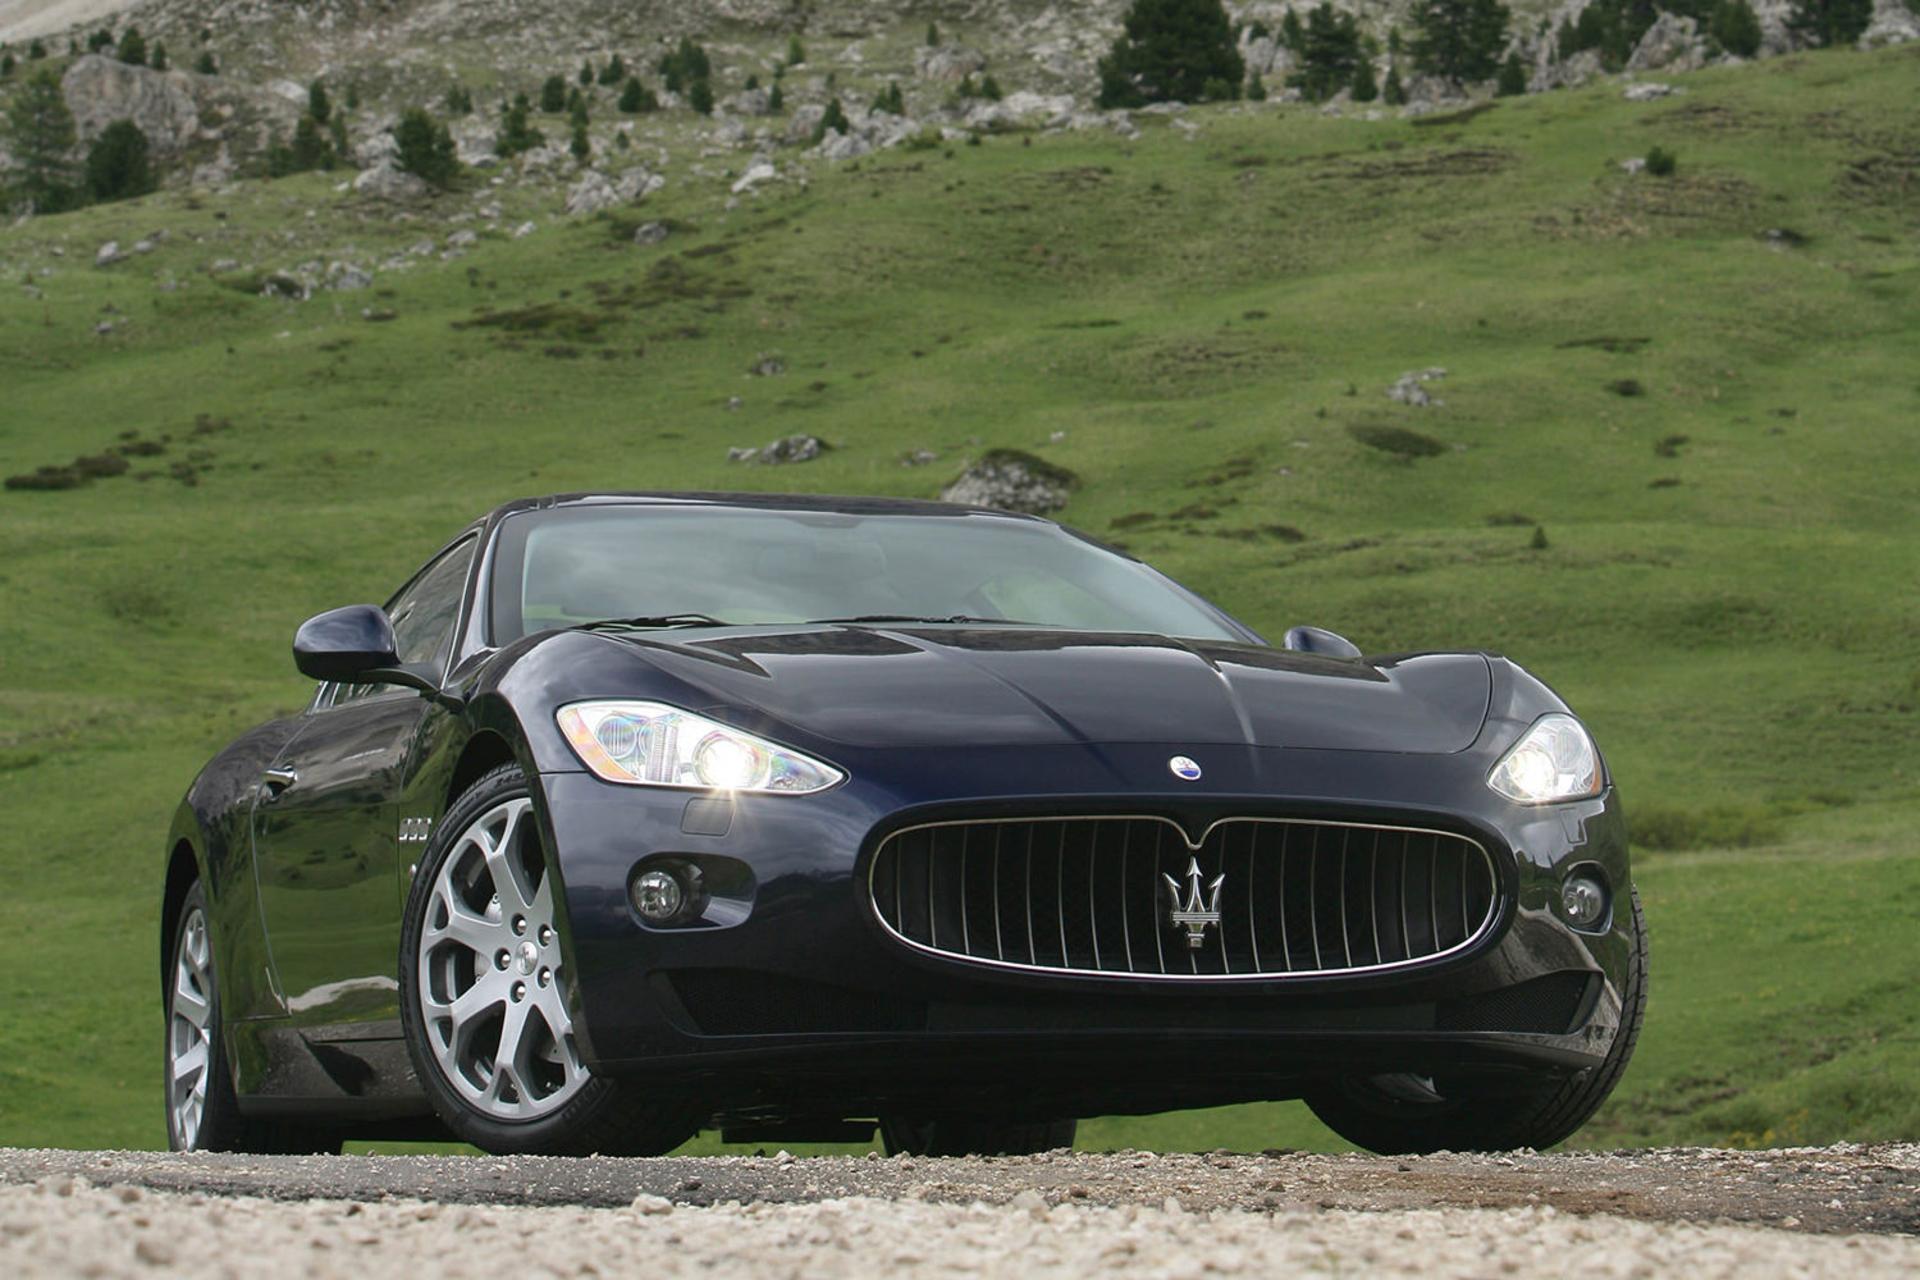 خودرو مازراتی گرن توریسمو ۲۰۰۸ / Maserati GranTurismo 2008 نمای جلو ۰۵